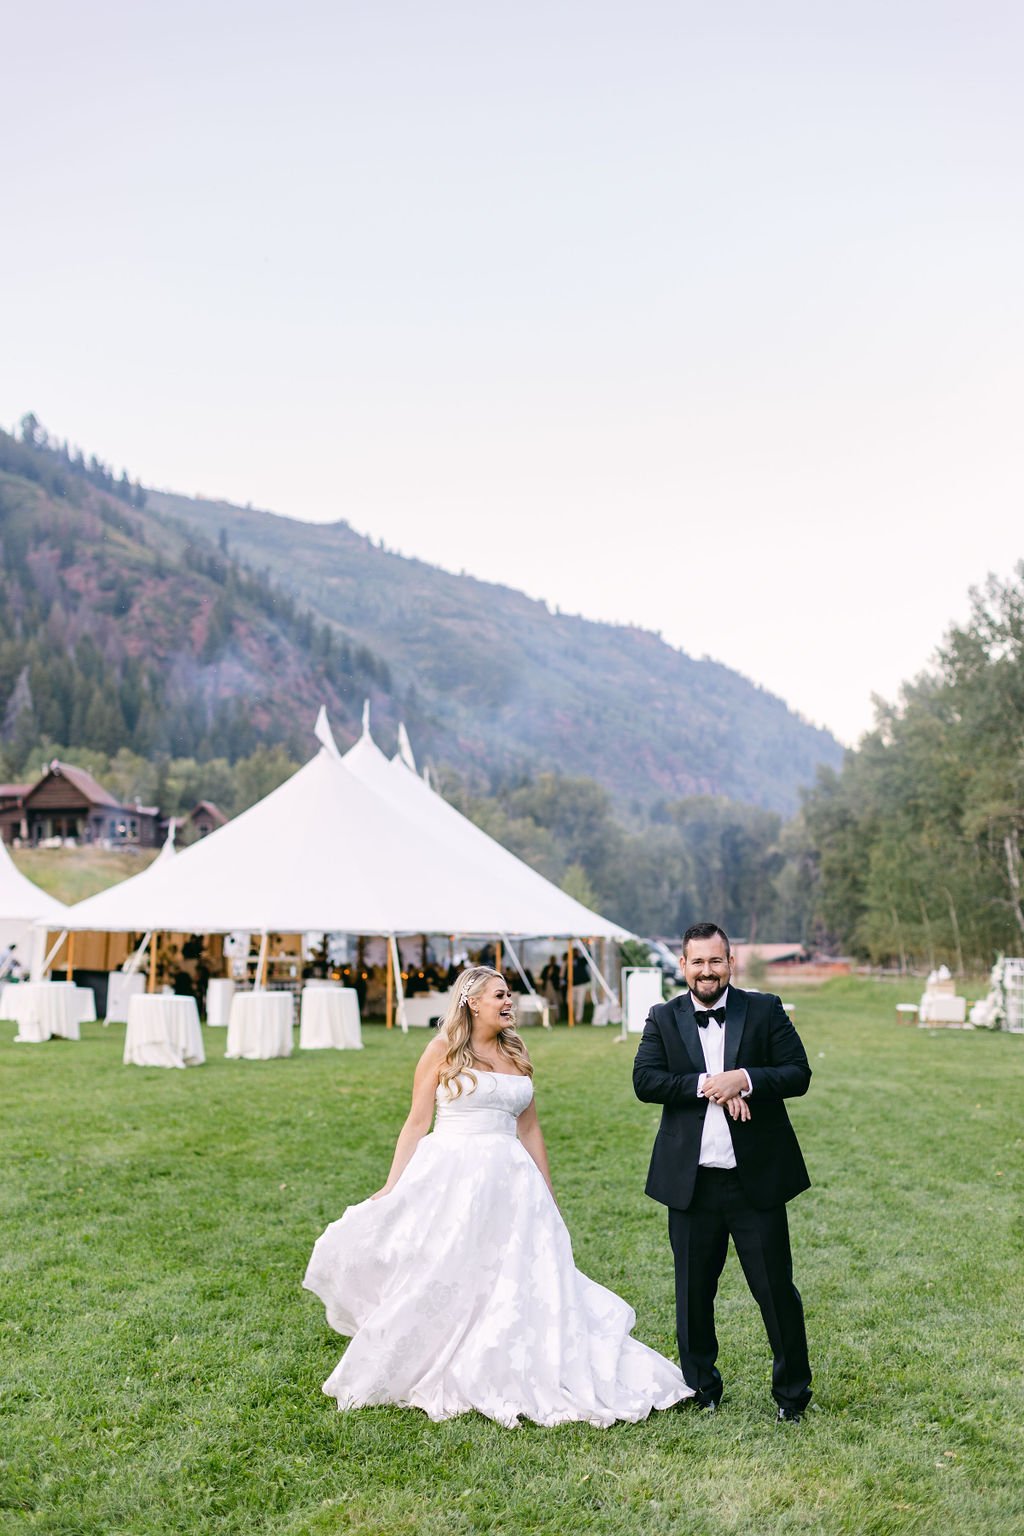  tent reception outdoor wedding aspen aline gown  